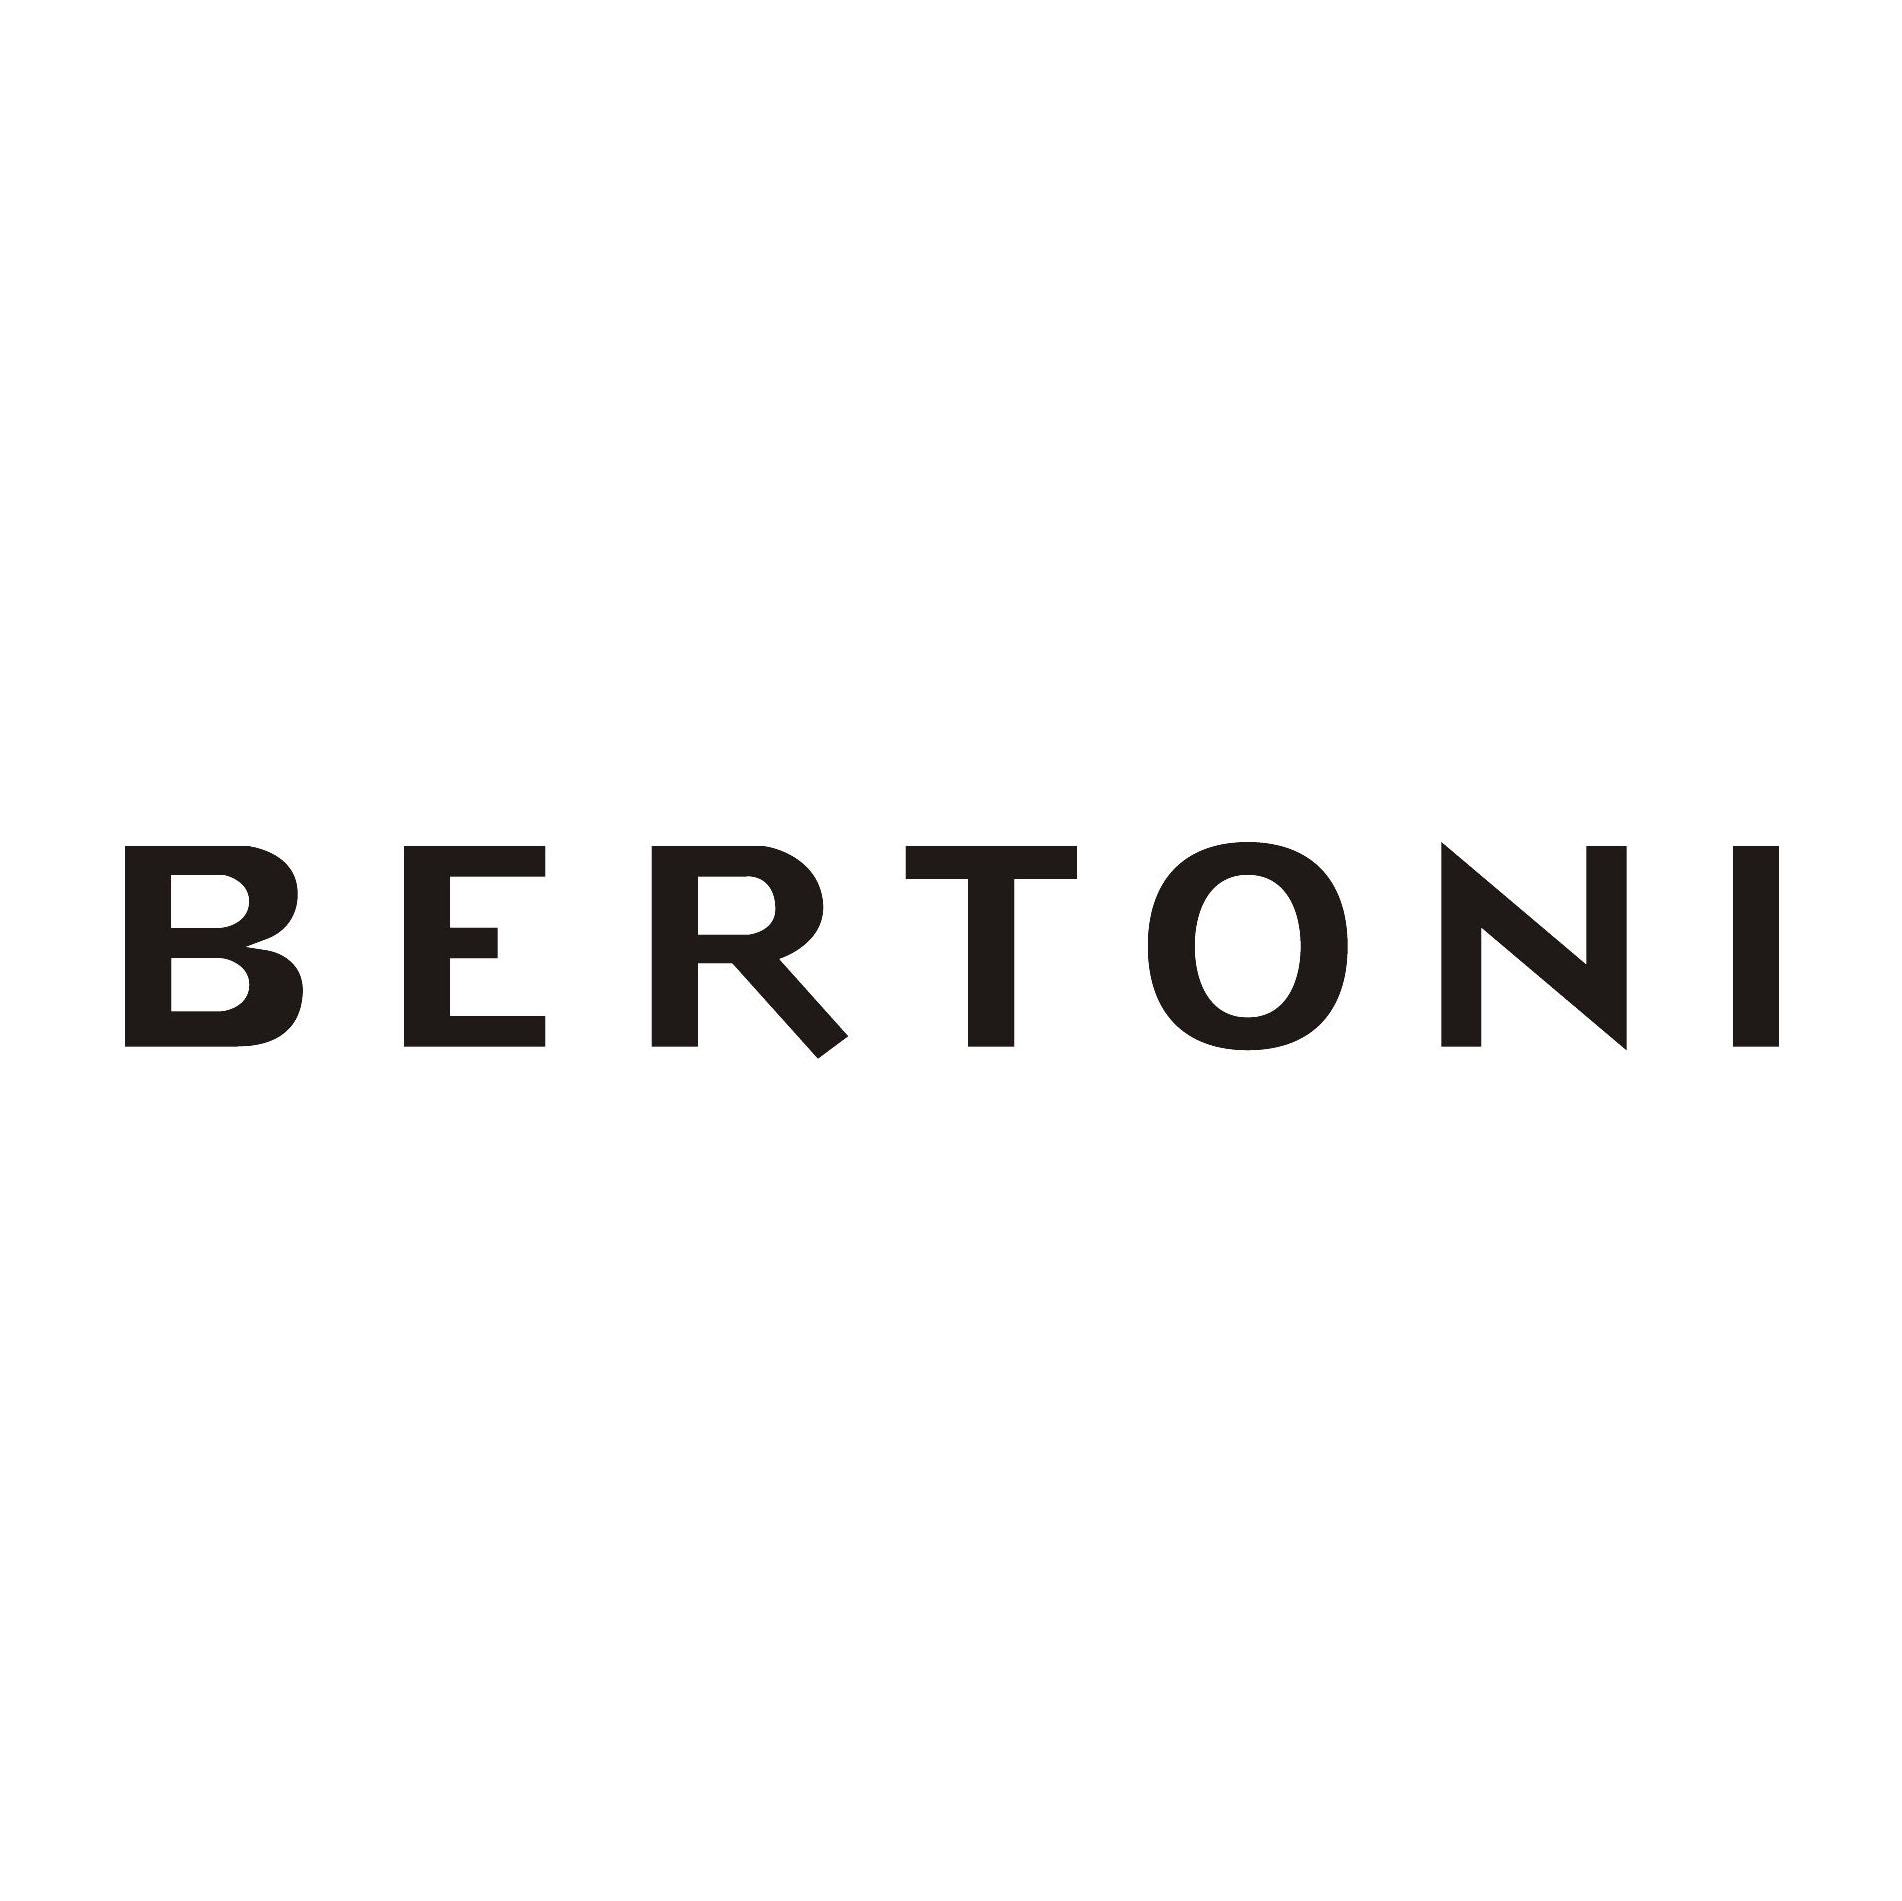 Bertoni søker deltidsselgere